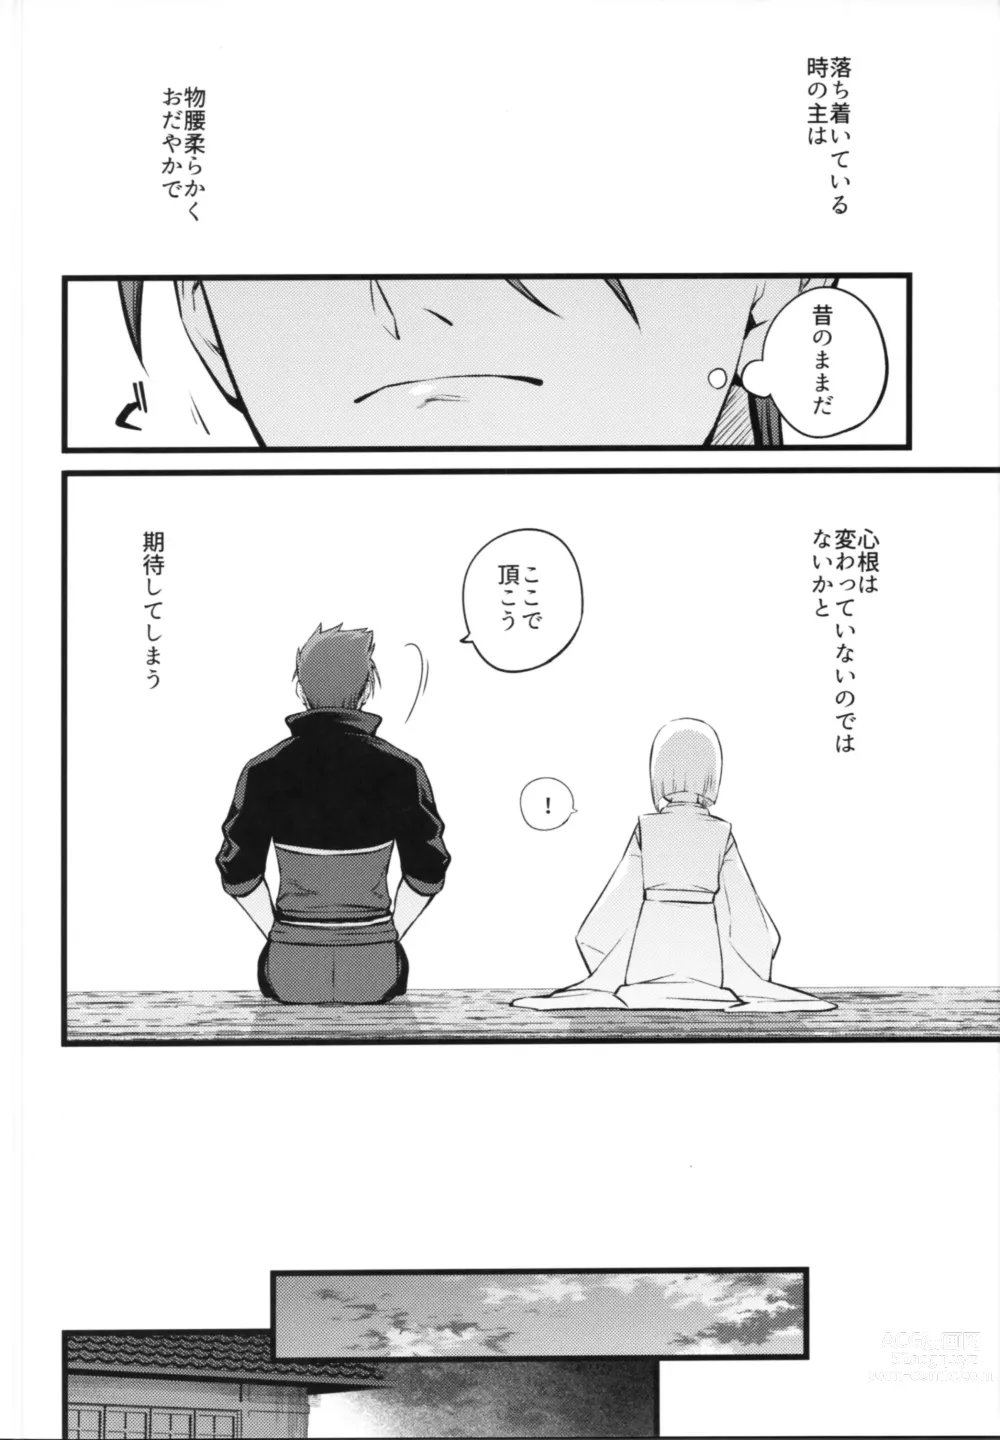 Page 13 of doujinshi Kamigakari no nagusami